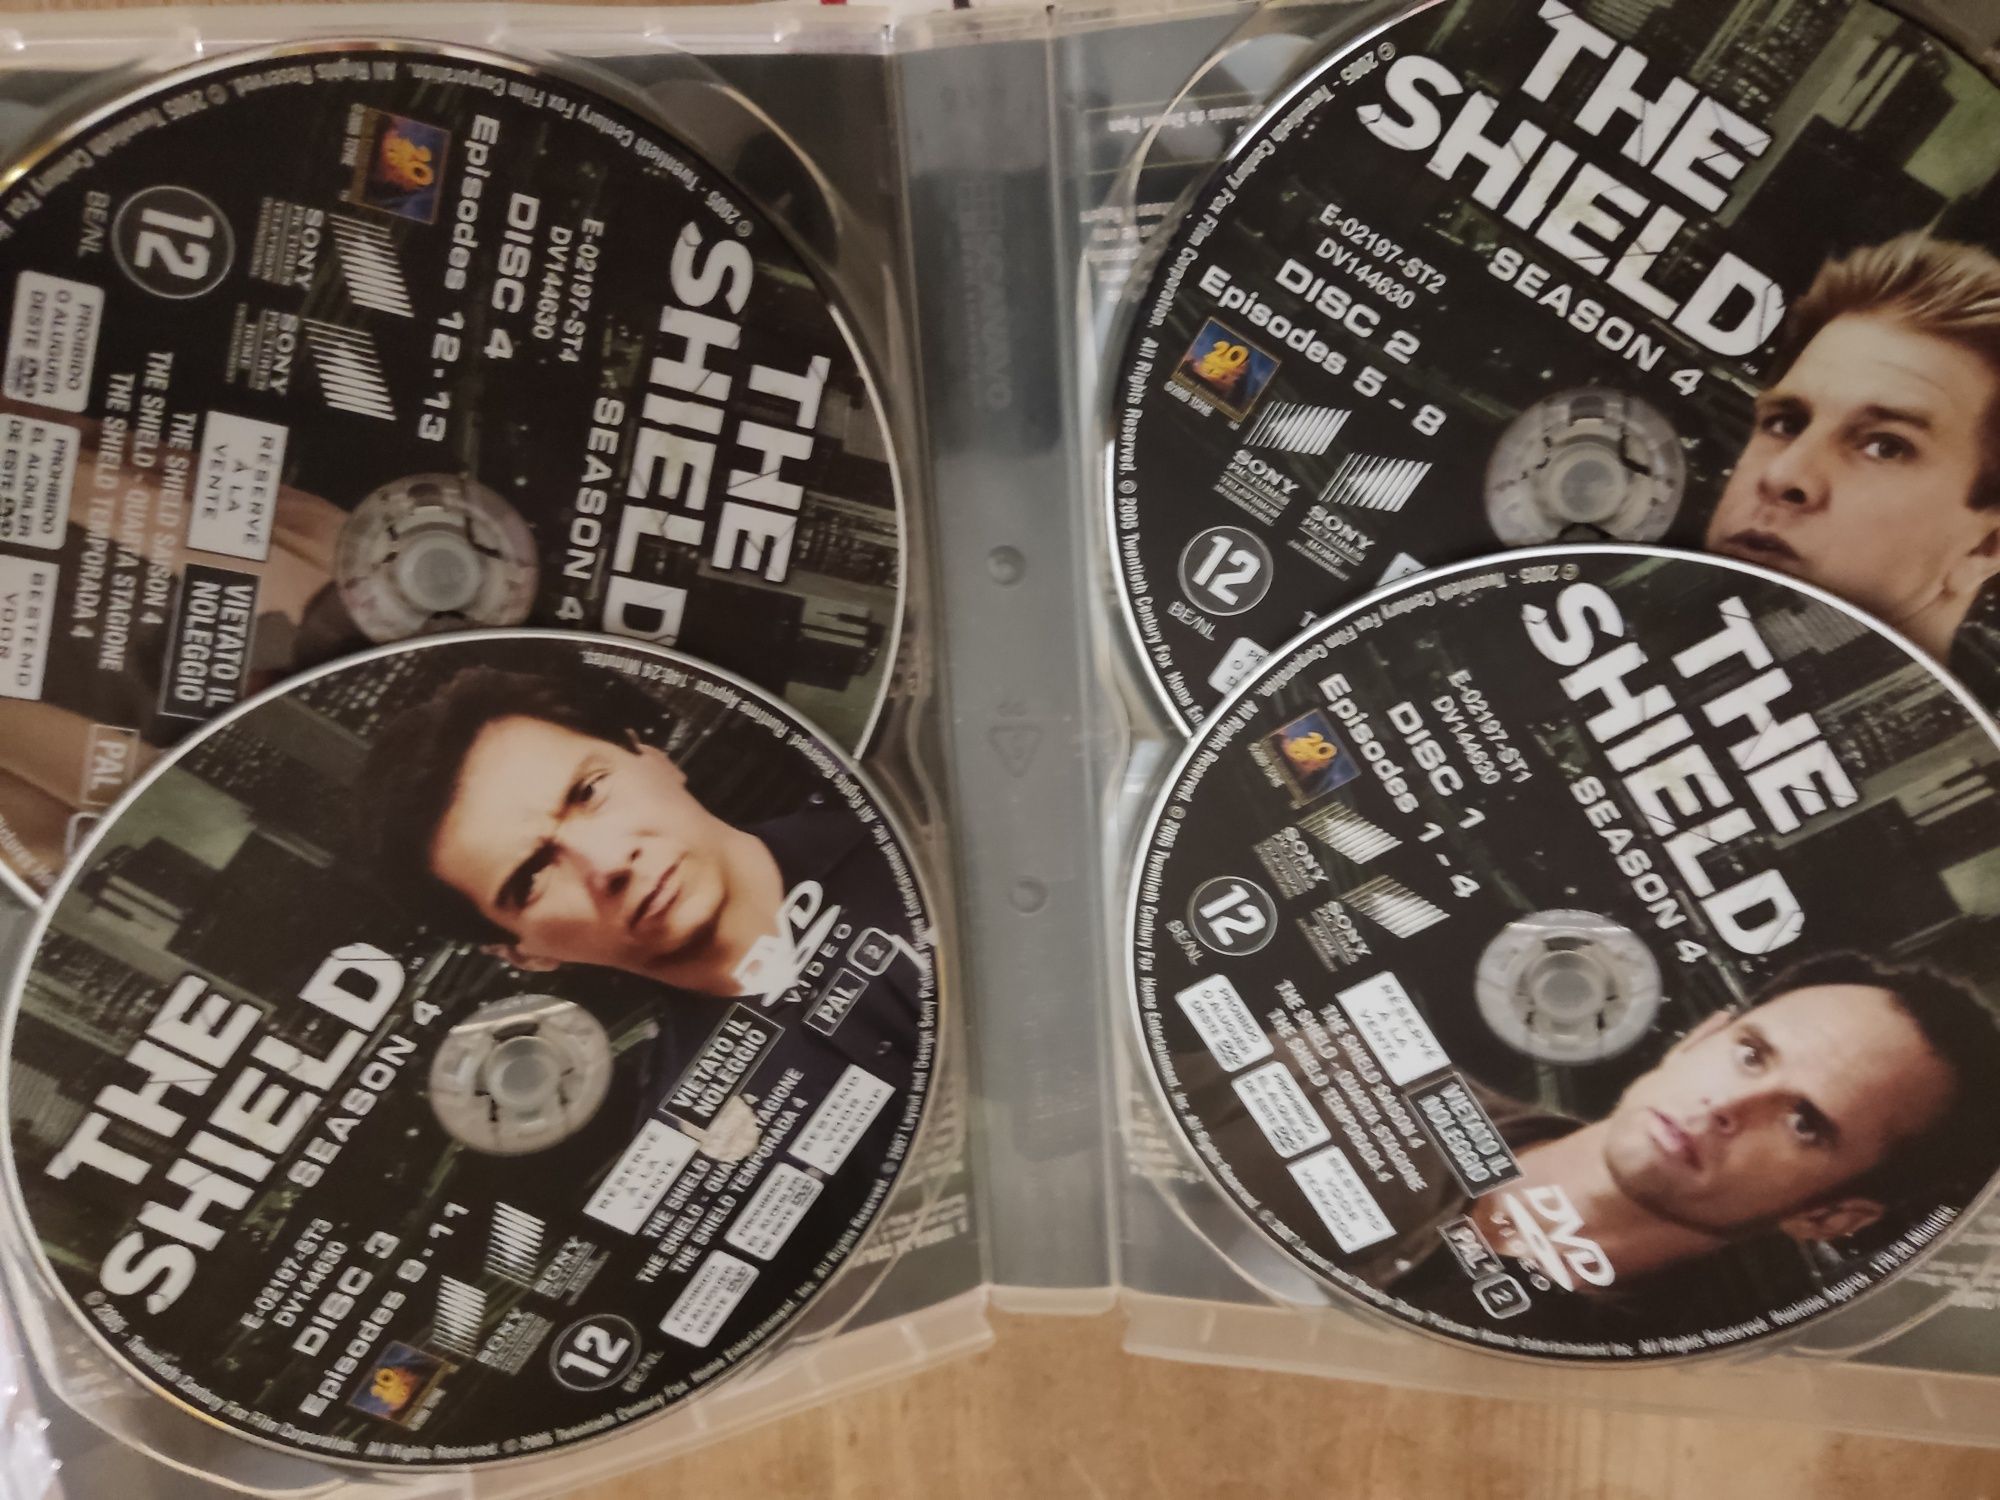 The shield série tv